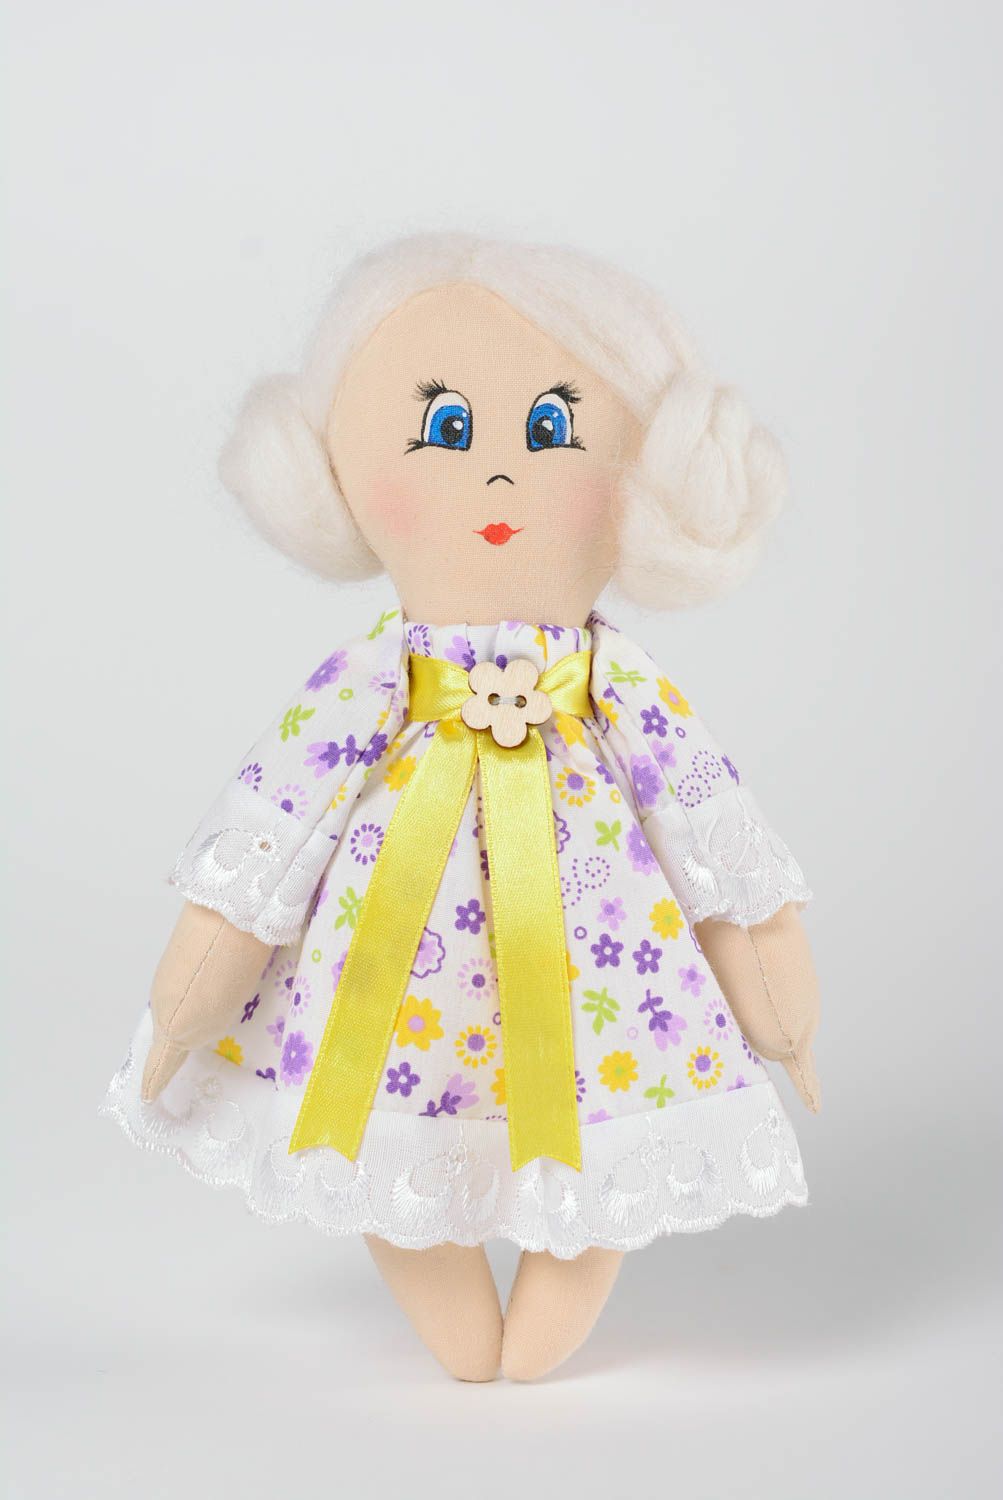 Мягкая кукла ручной работы в платье из хлопка расписная красивая для девочки фото 1